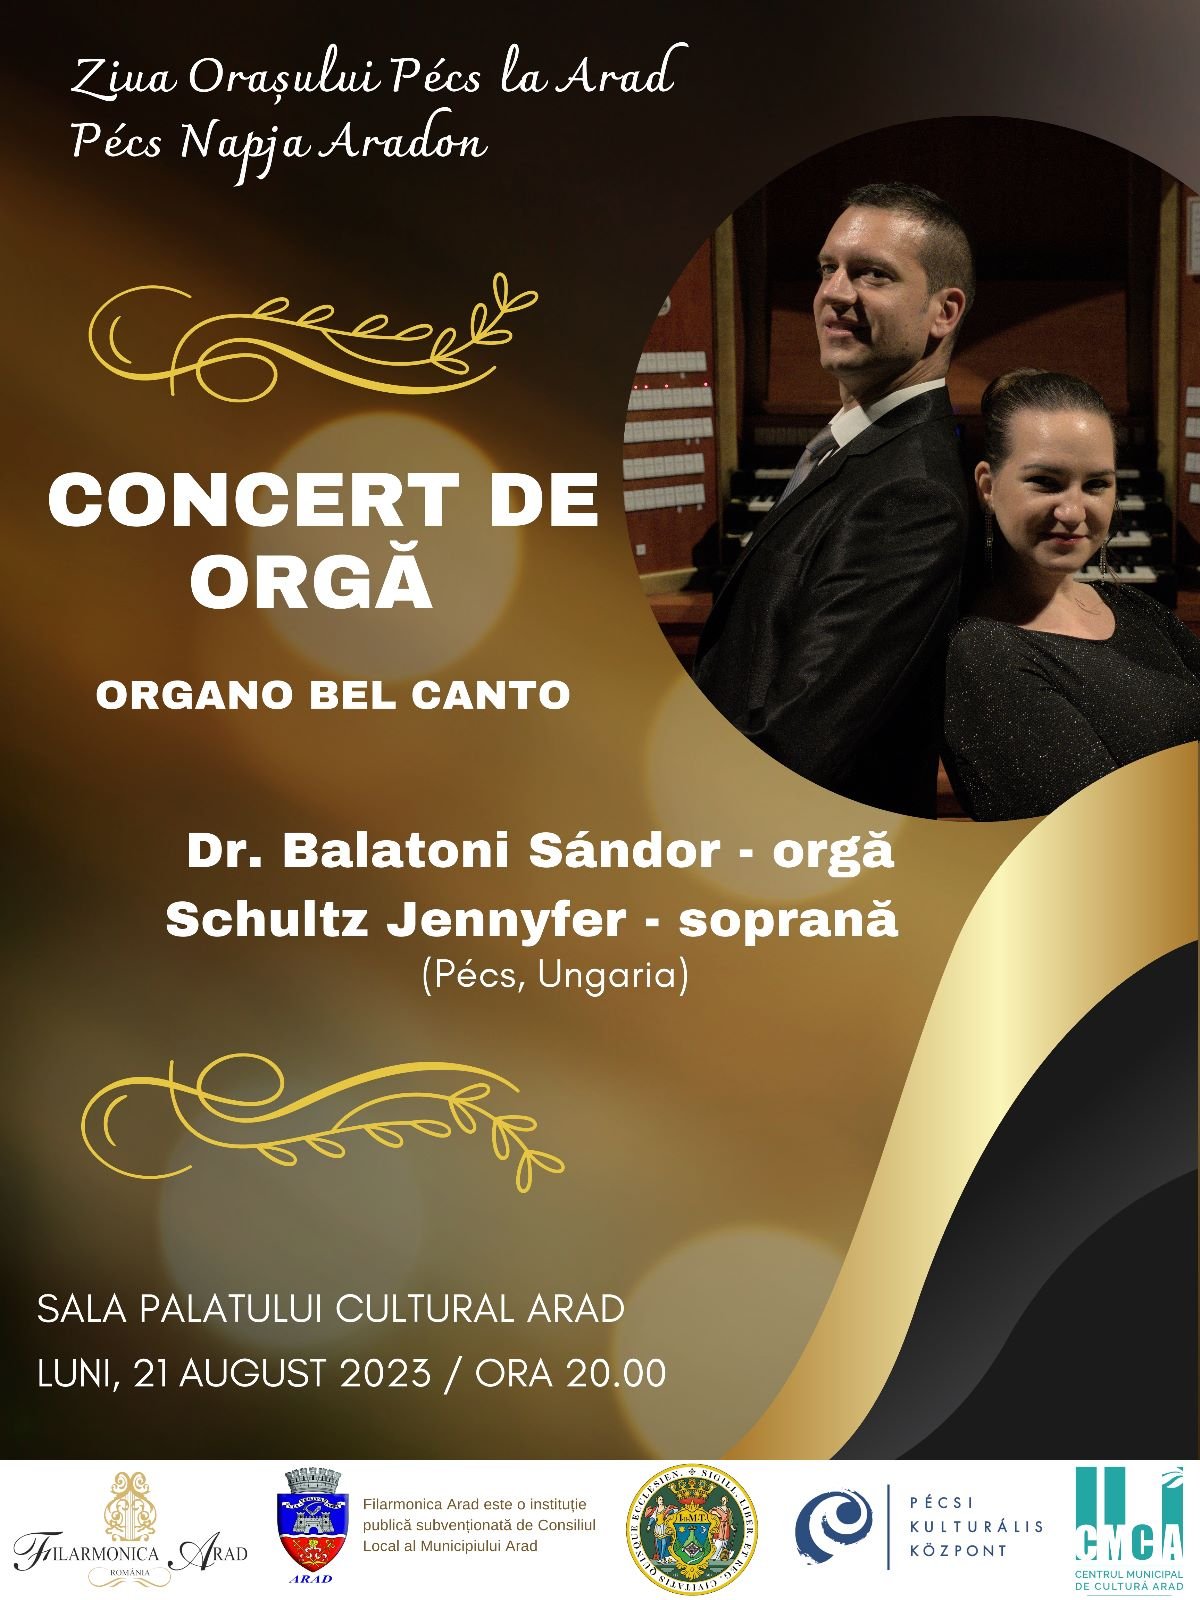 Expoziție de grafică și concert de orgă cu ocazia Zilei orașului Pécs la Arad